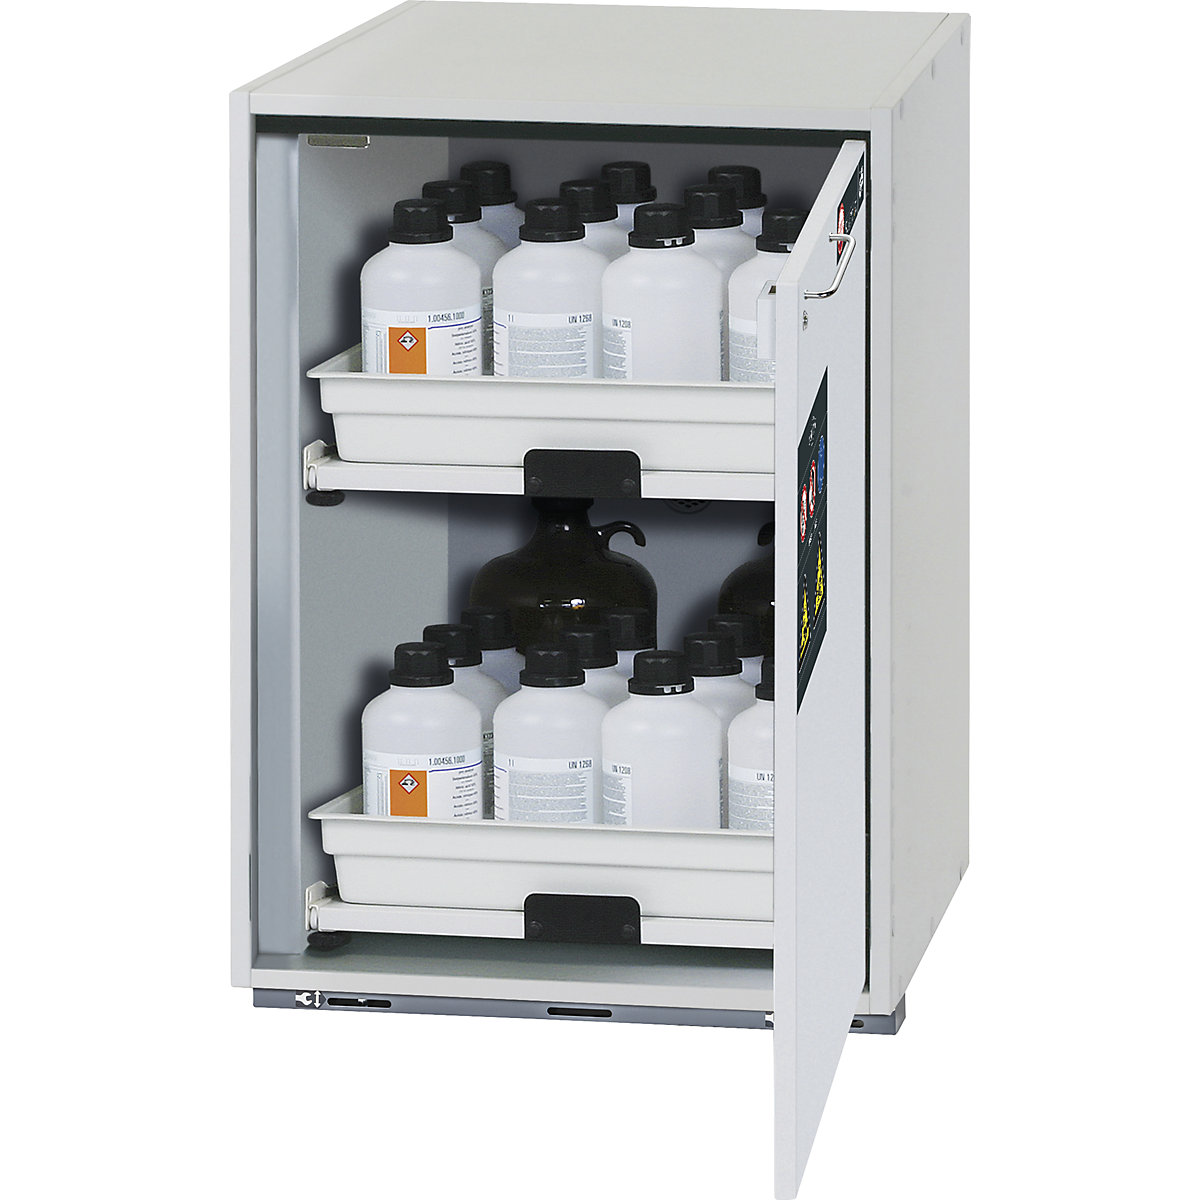 Spodnja omarica za nevarne snovi za kisline in baze – asecos, 1 vrata, VxŠxG 800 x 590 x 570 mm, 2 izvlečna dela-2